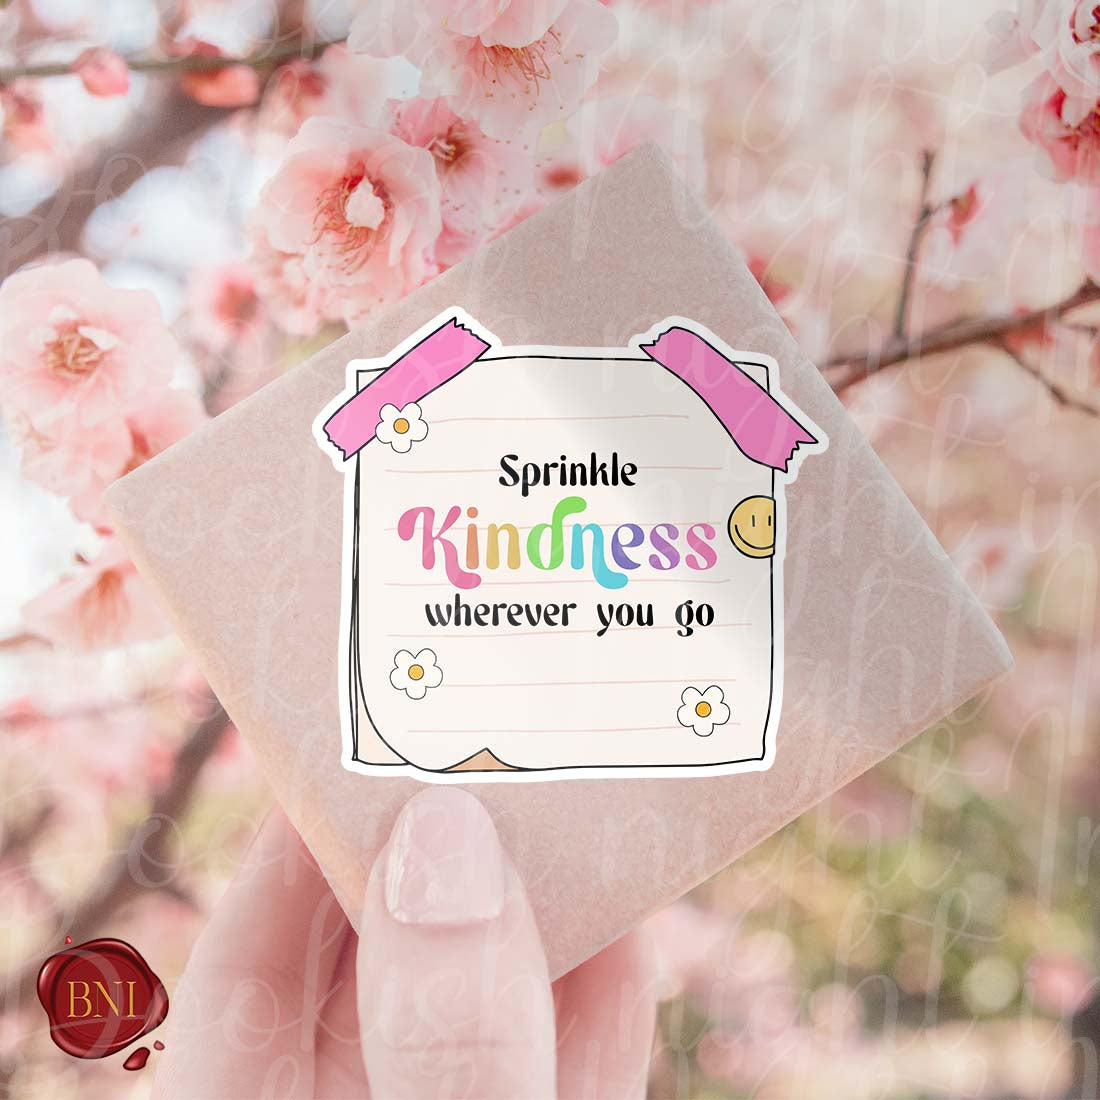 Sprinkle kindness wherever you go